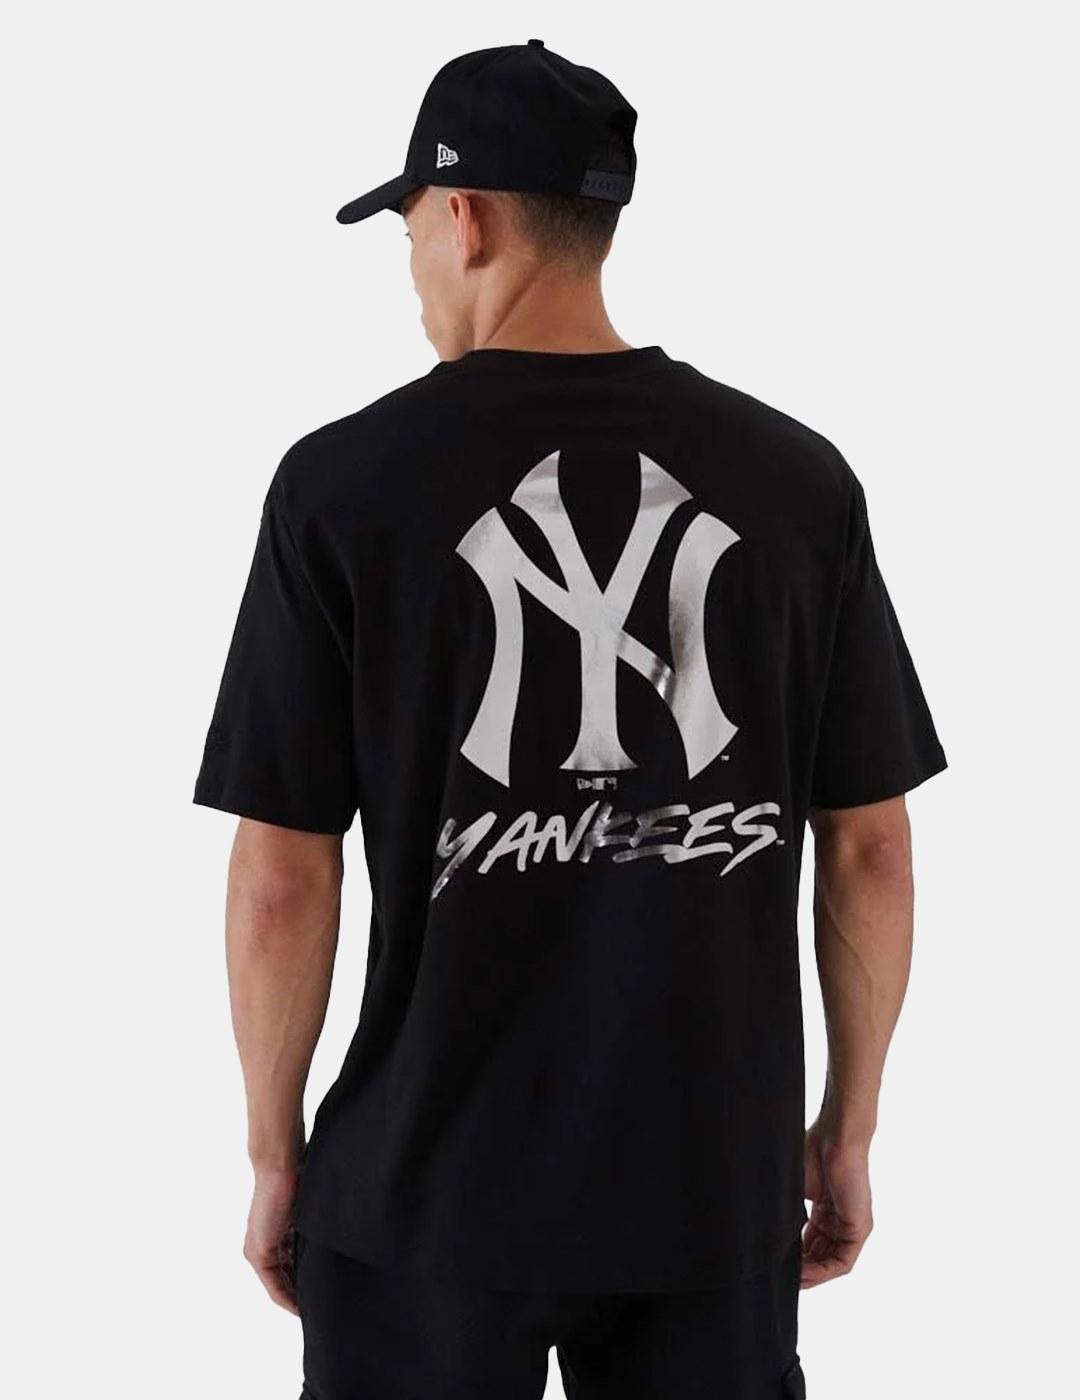 Camiseta New Era MLB Bp Metallic New York Yankees